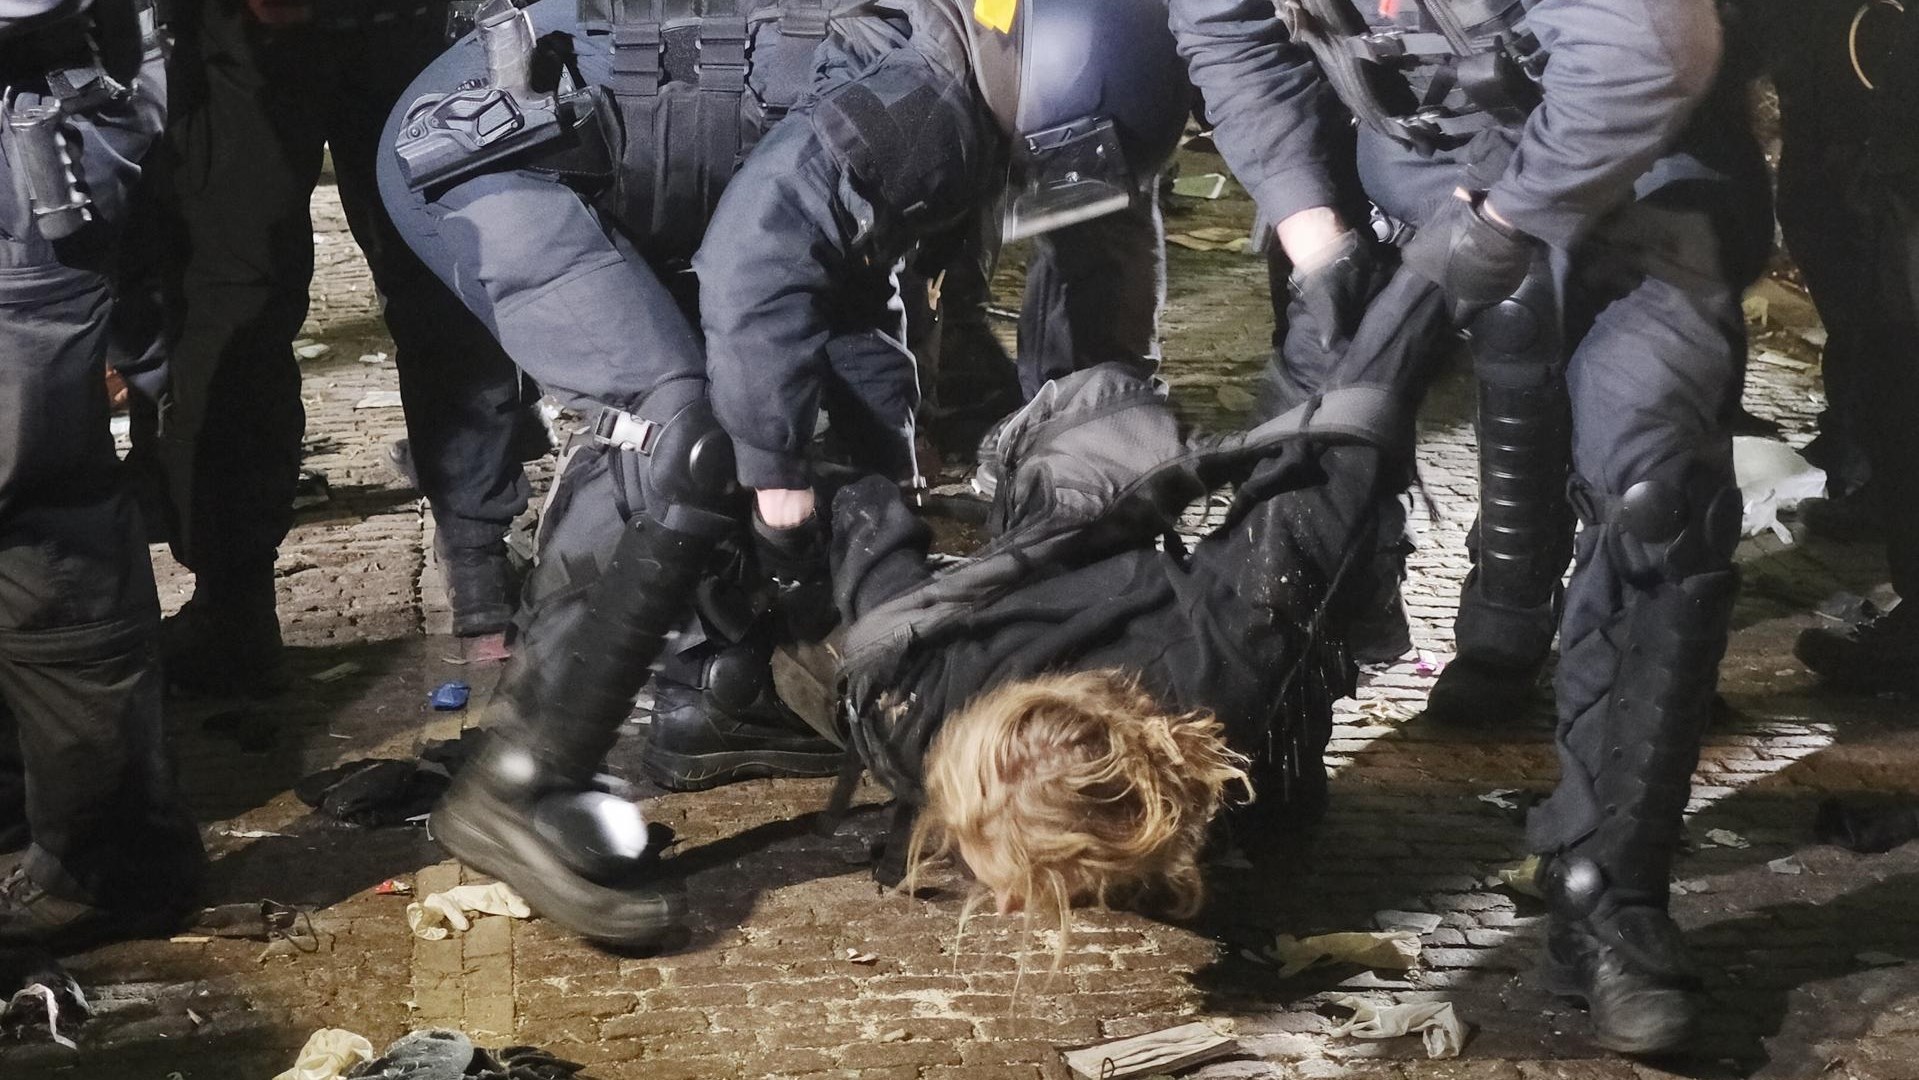 Med demonstracijami v Leipzigu spopad med policijo in protestniki